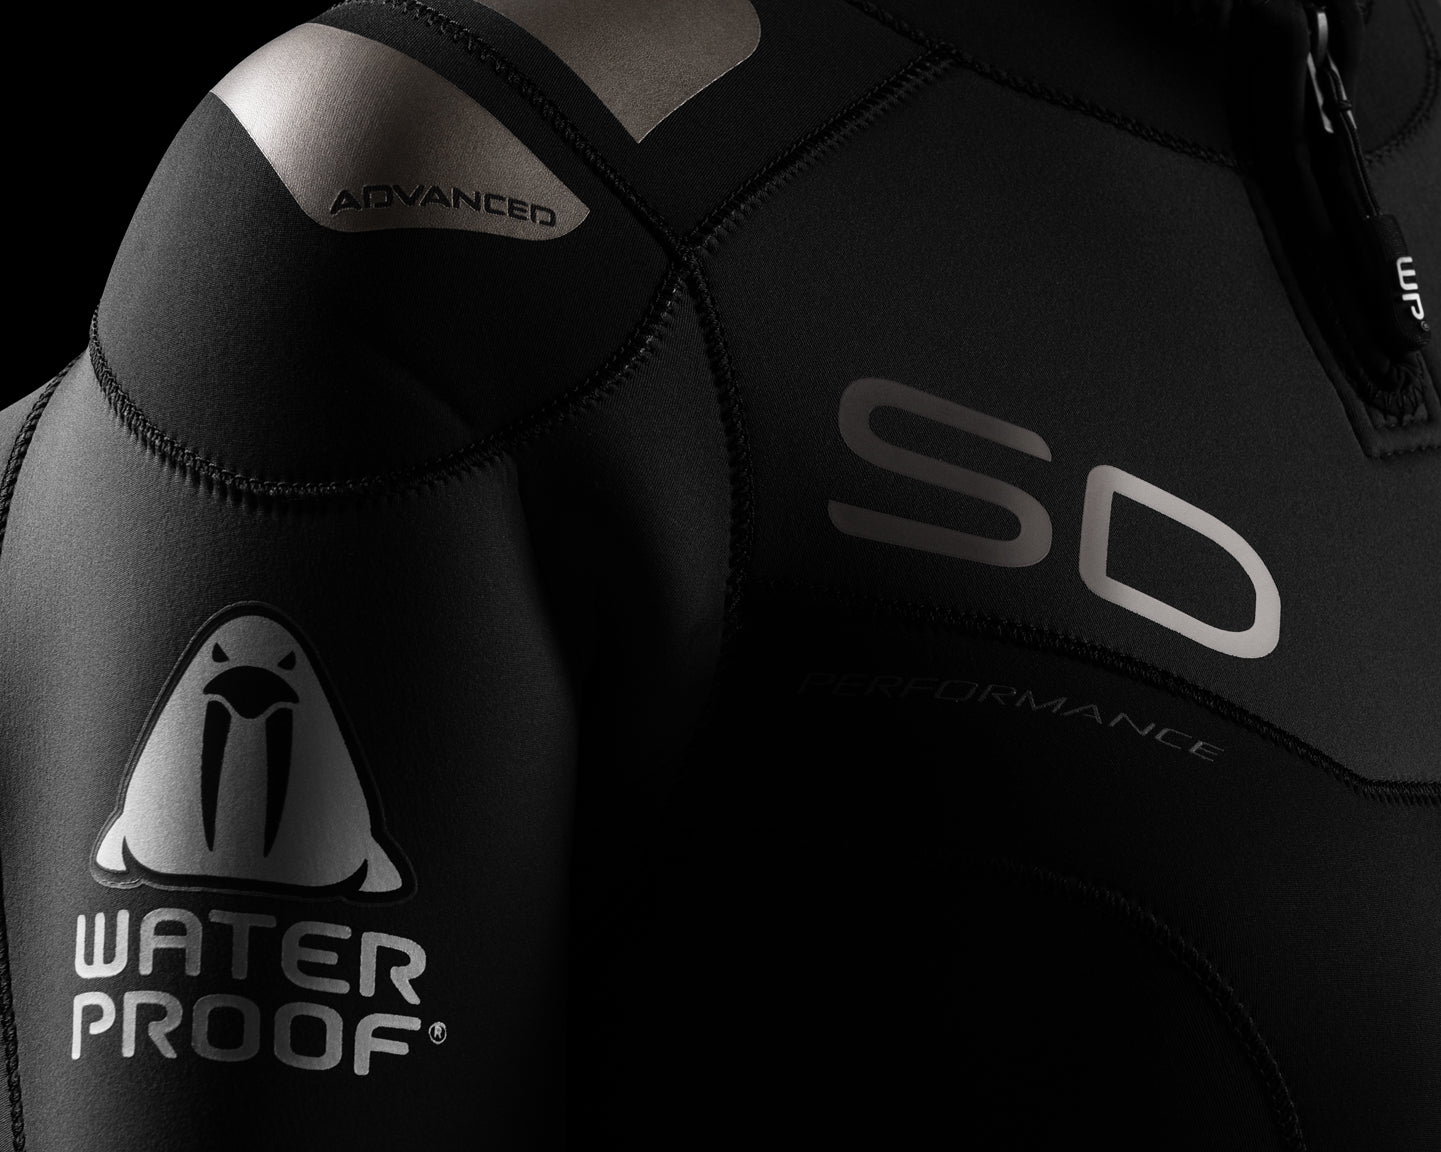 Waterproof SD Neoflex Semidry 7mm חליפת צלילה חצי יבשה לנשים בעובי 7 מ"מ